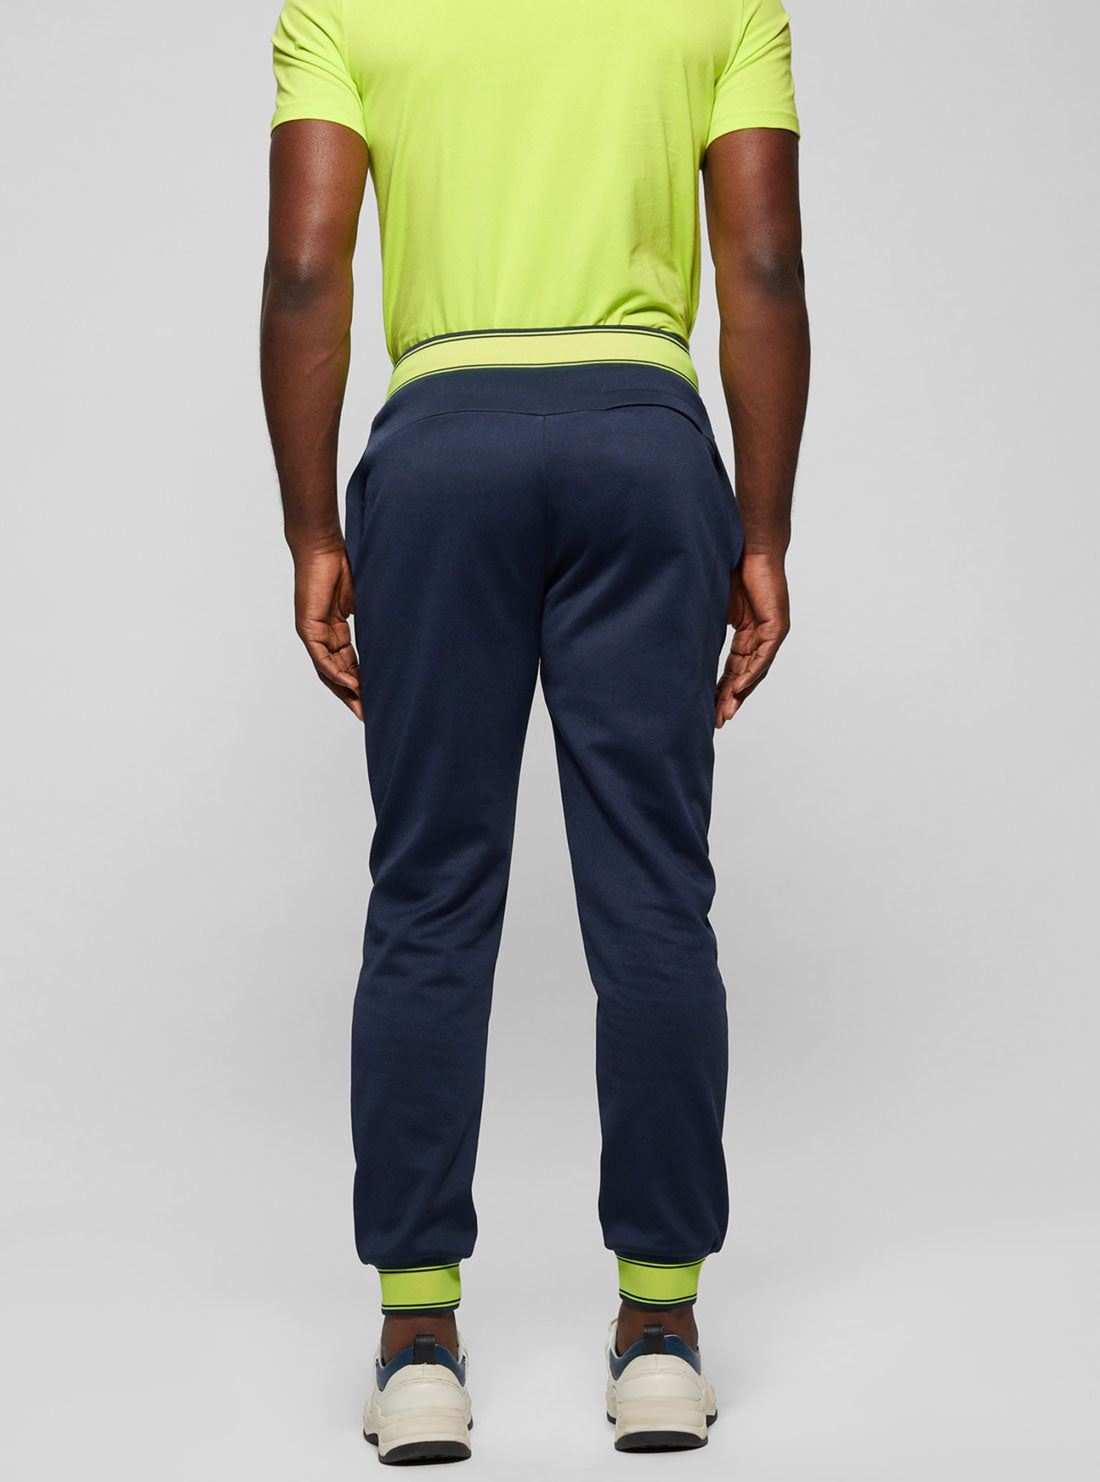 Eco Fluorescent Blue Leroi Active Pants | GUESS Men's Apparel | back view